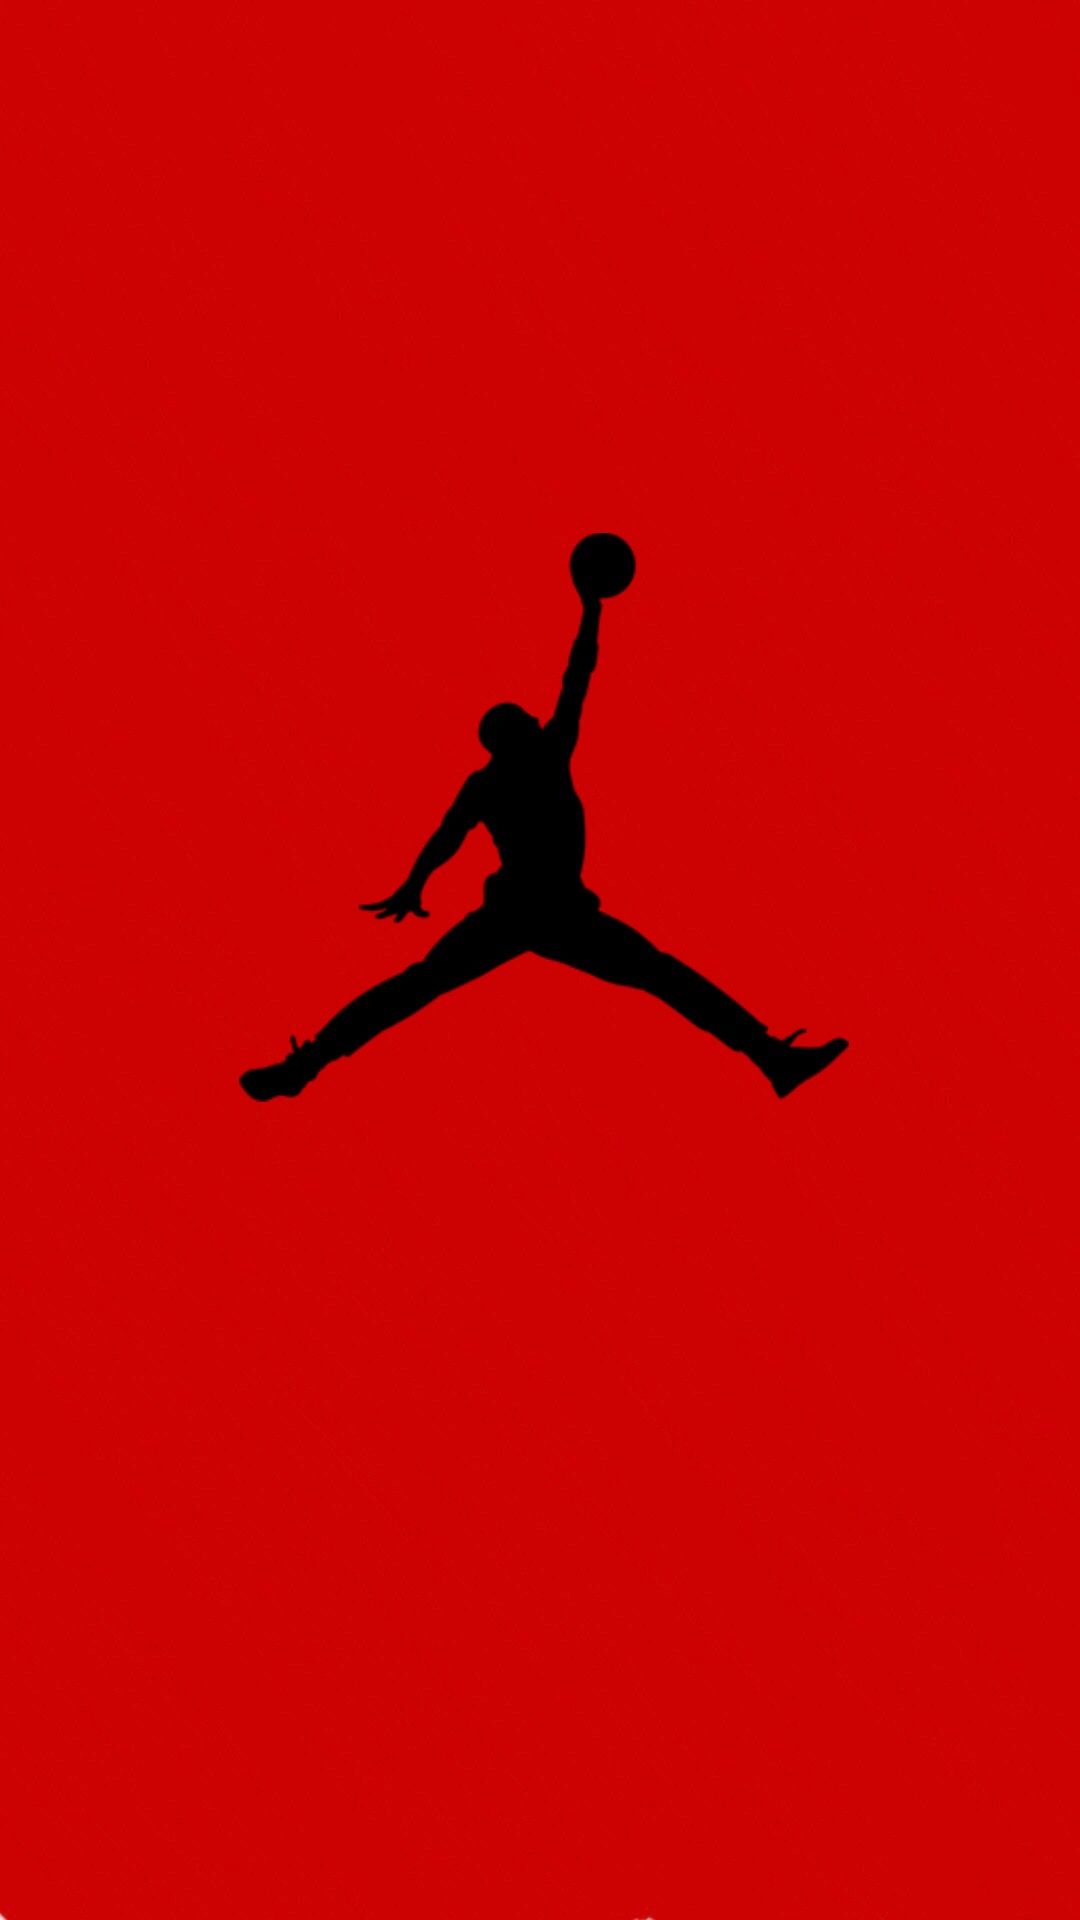 jumpman iphone wallpaper,red,t shirt,silhouette,logo,art